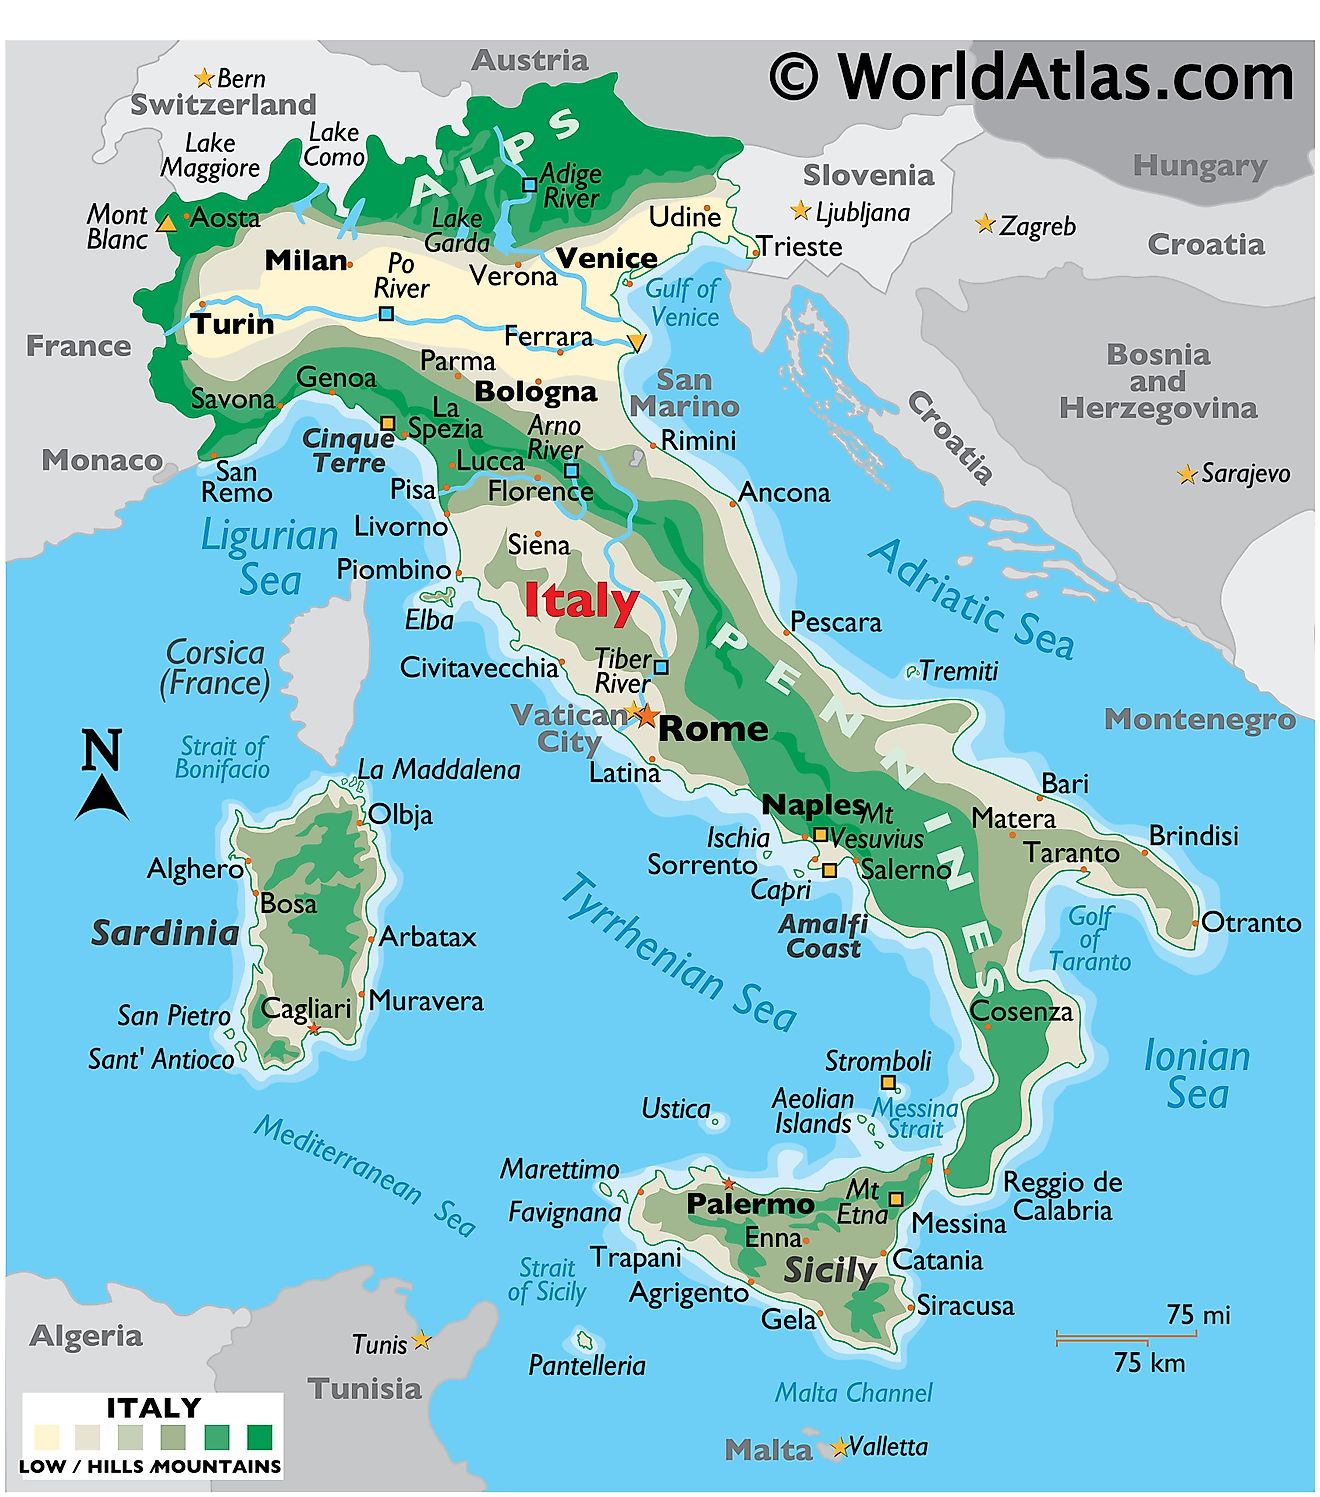 Mapa físico de Italia que muestra el terreno, las montañas, los puntos extremos, las islas, los ríos, las principales ciudades, las fronteras internacionales, etc.